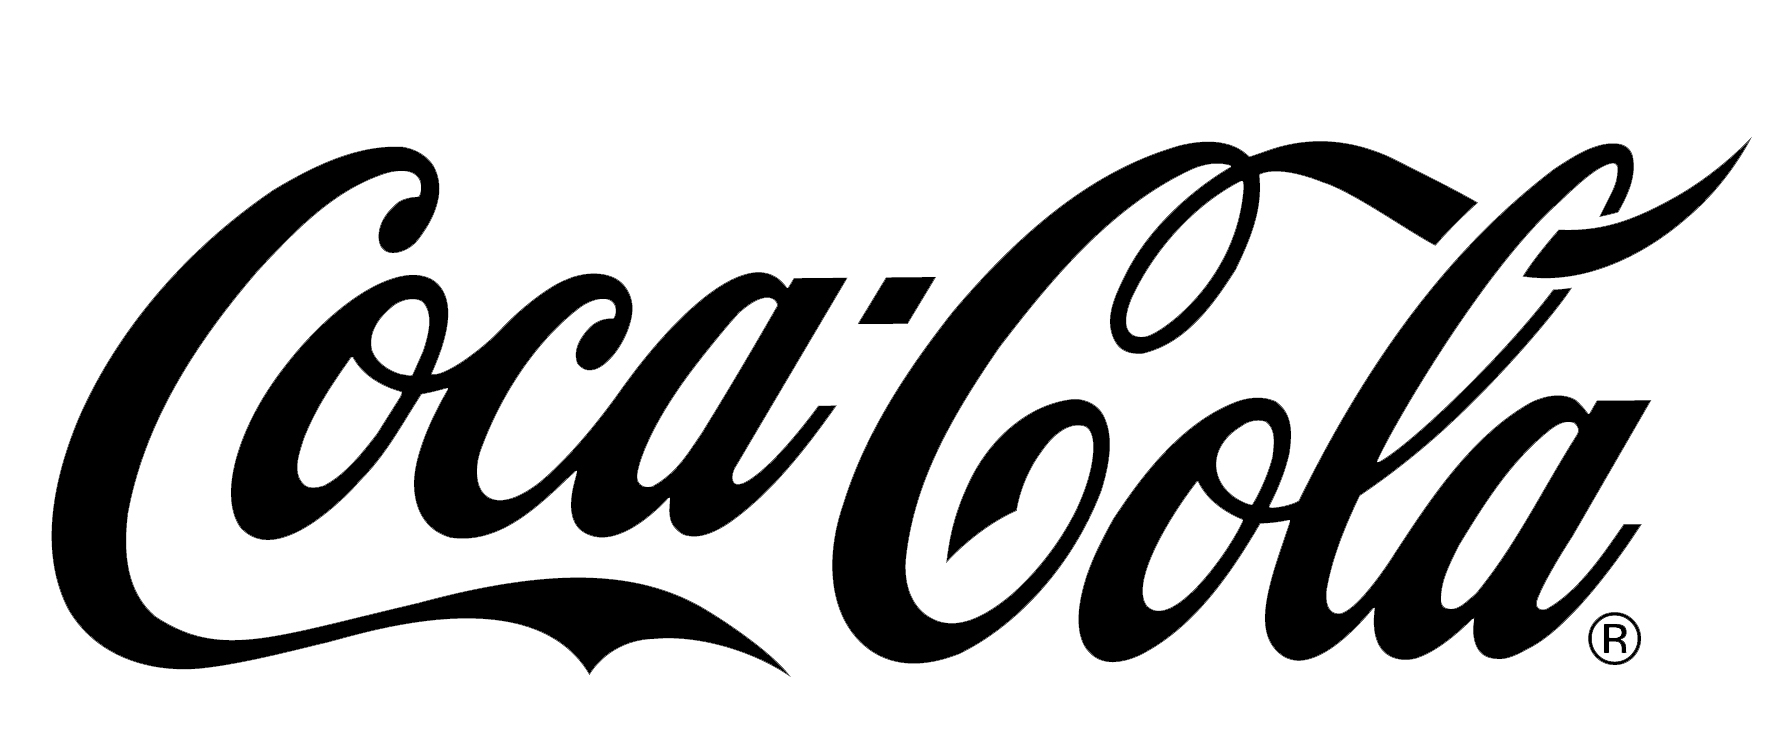 coca-cola-sort